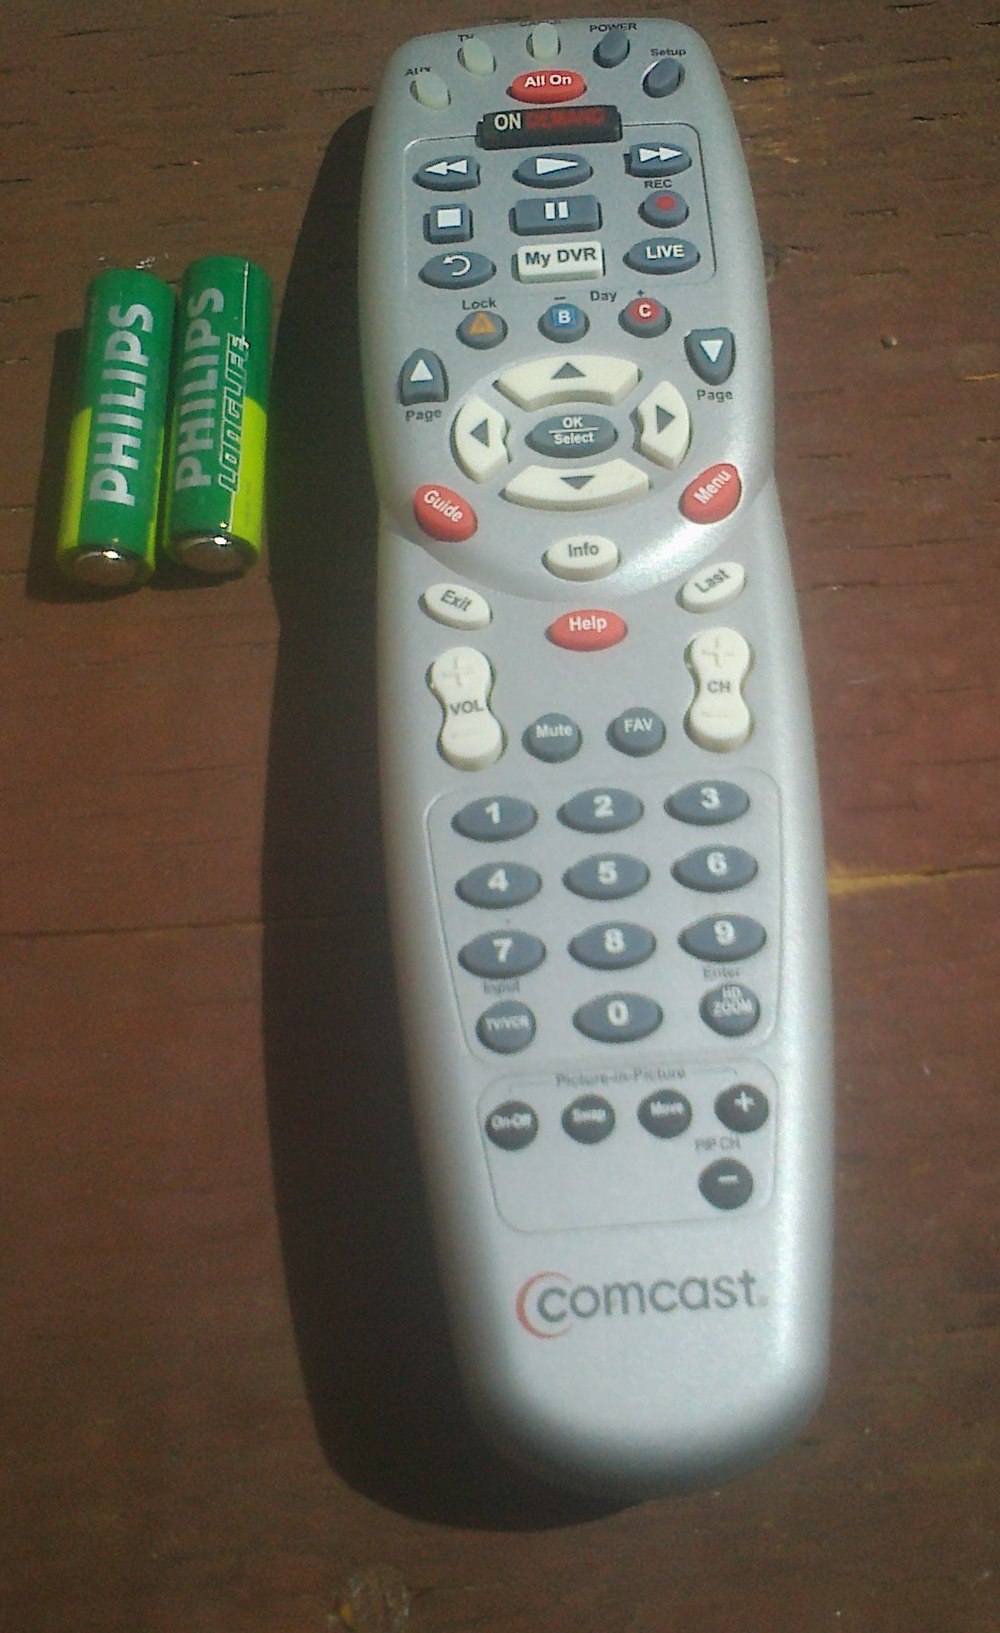 Comcast Remotes